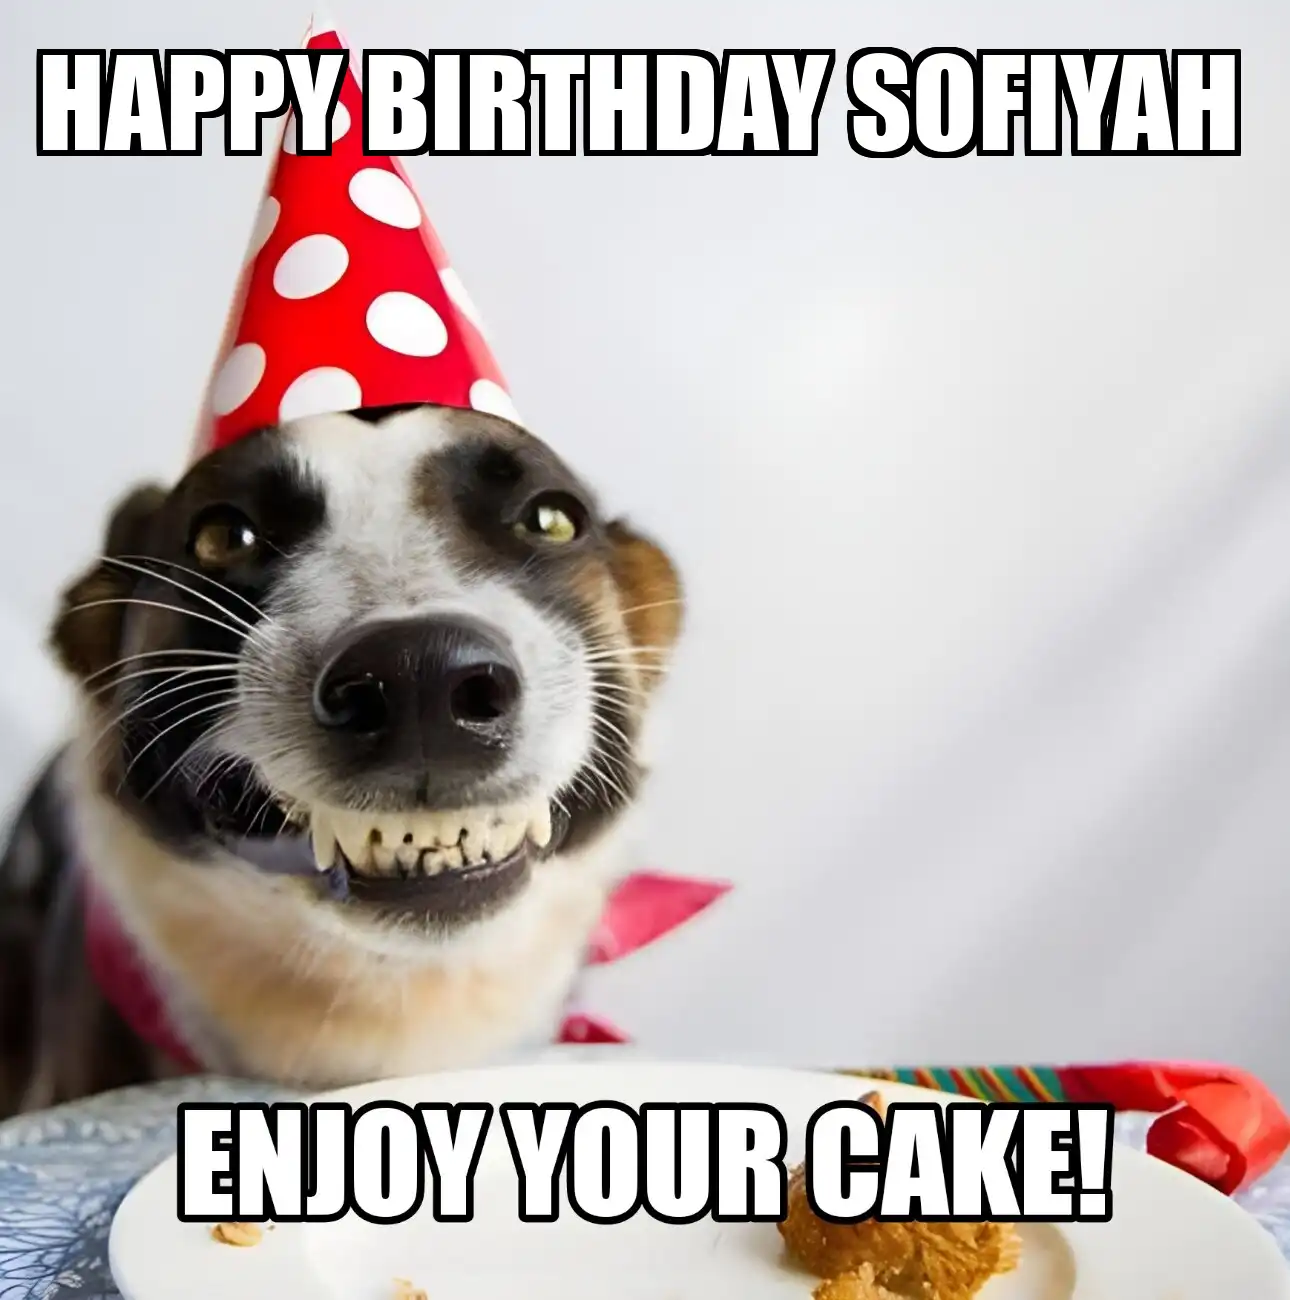 Happy Birthday Sofiyah Enjoy Your Cake Dog Meme